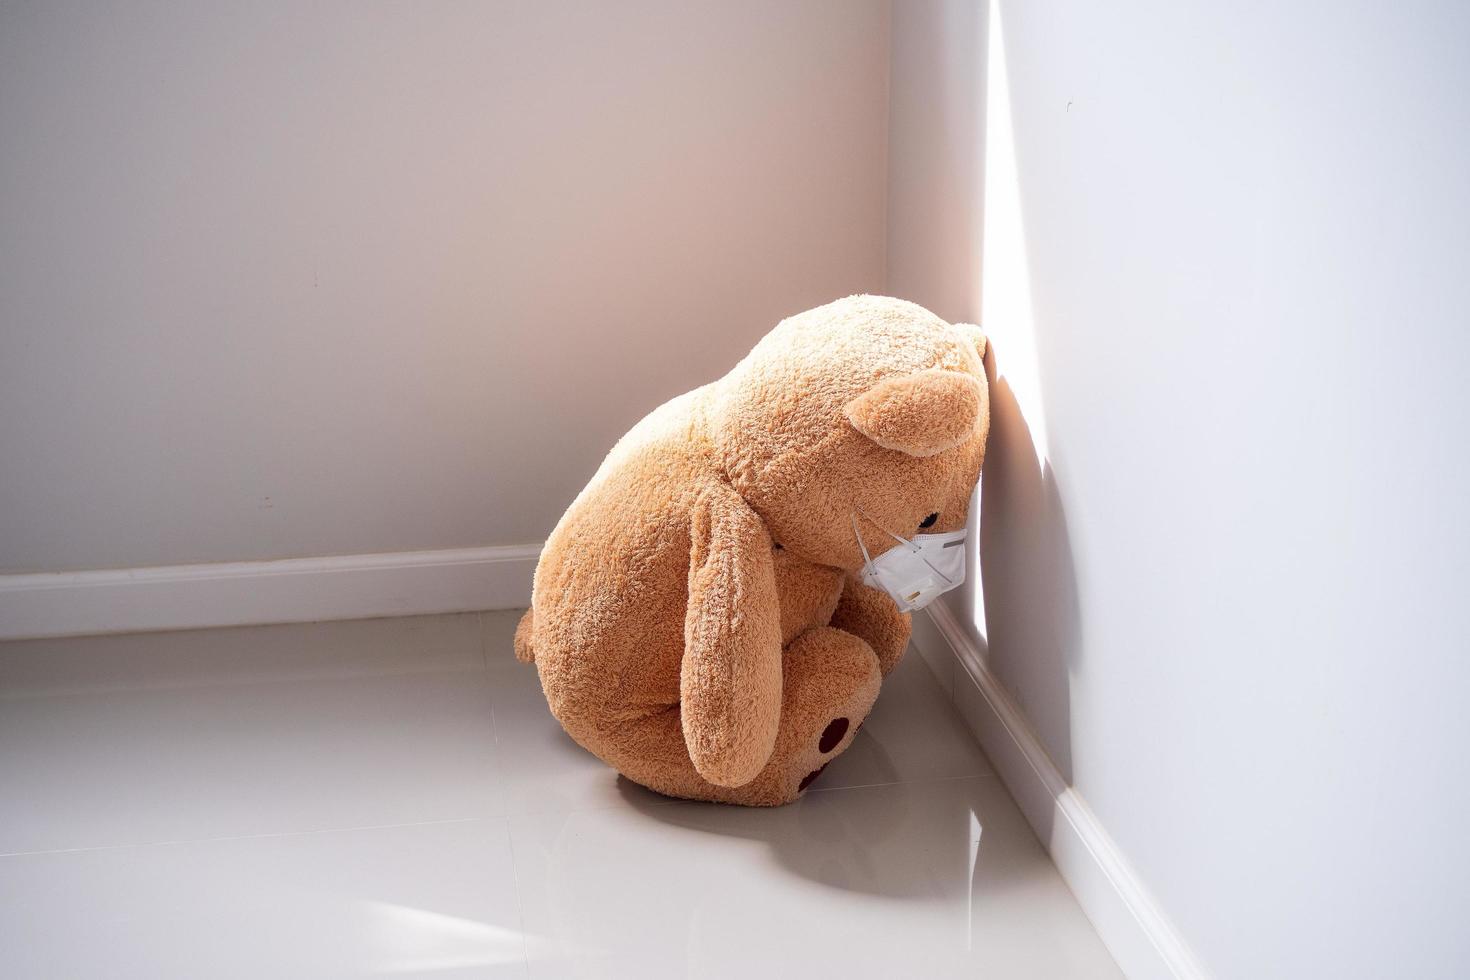 de teddy beer is vervelend een masker, zittend en boog naar beneden in de hoek van de kamer. depressie, verdrietig, teleurstelling of ziekte foto